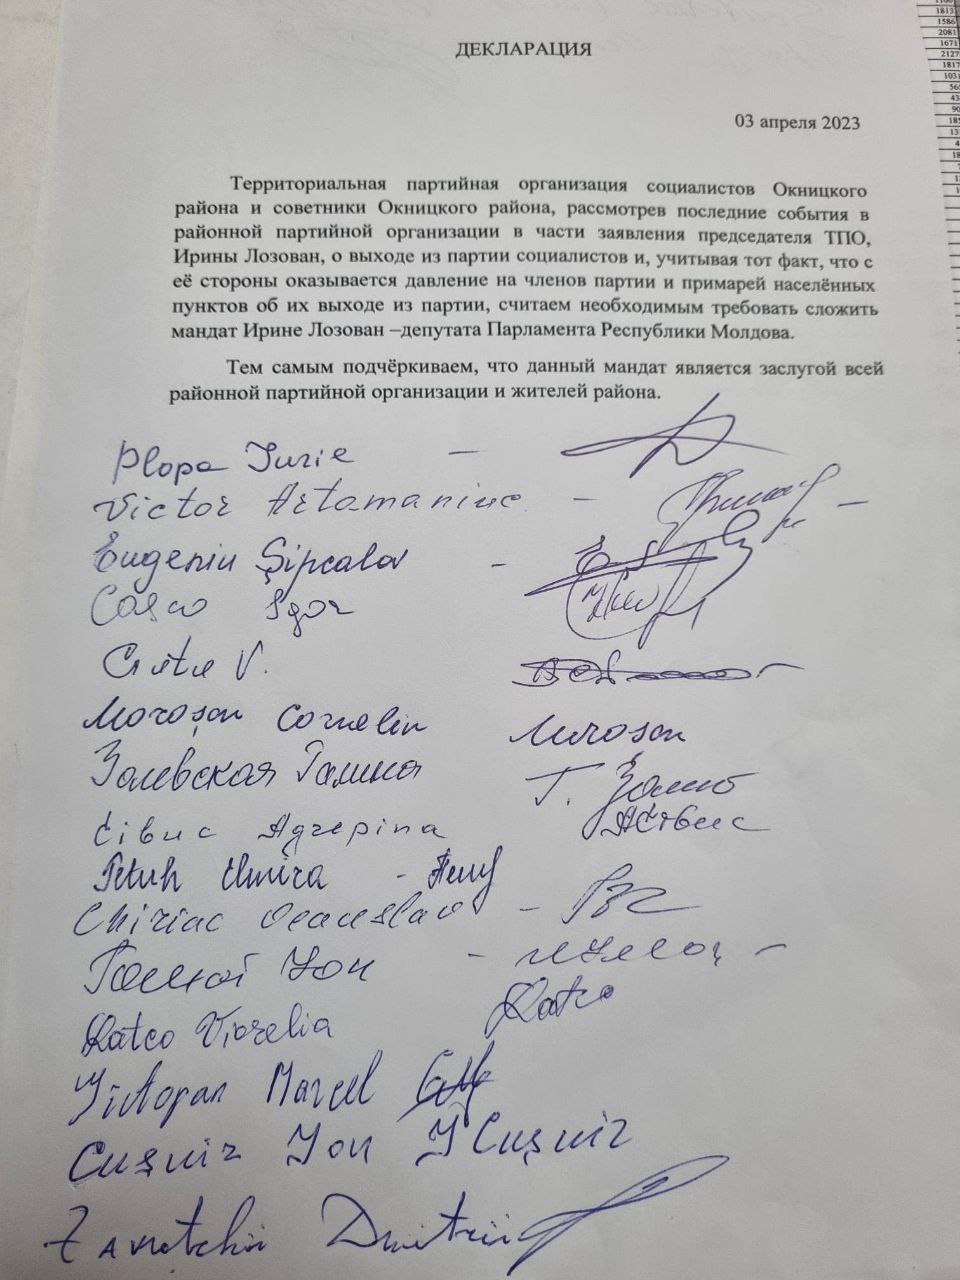 Социалисты обвинили бывшую коллегу Ирину Лозован в давлении на мэров из Окницкого района